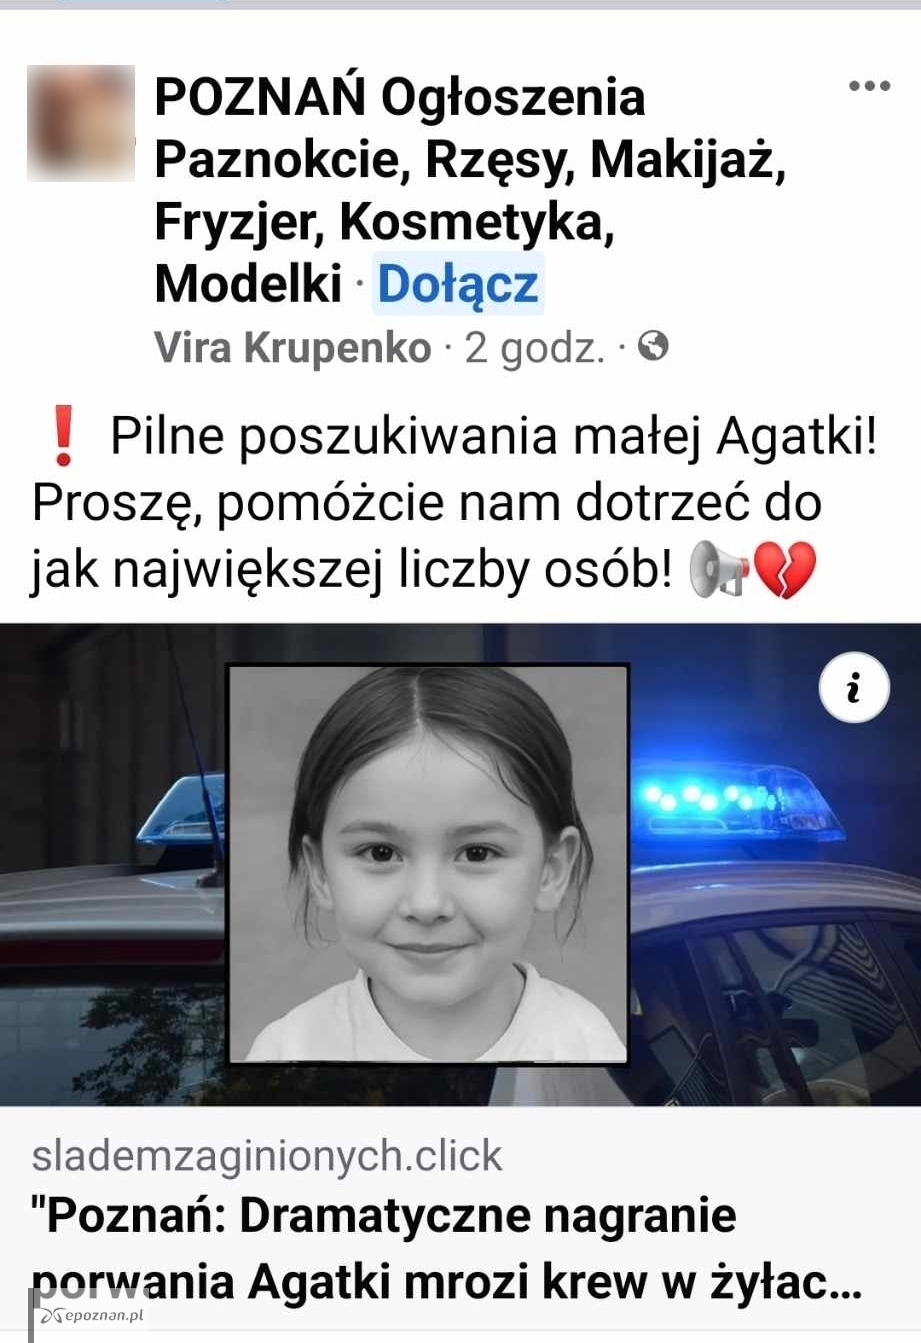 fot. Screen treści z grupy "Poznań Ogłoszenia..."/Facebook